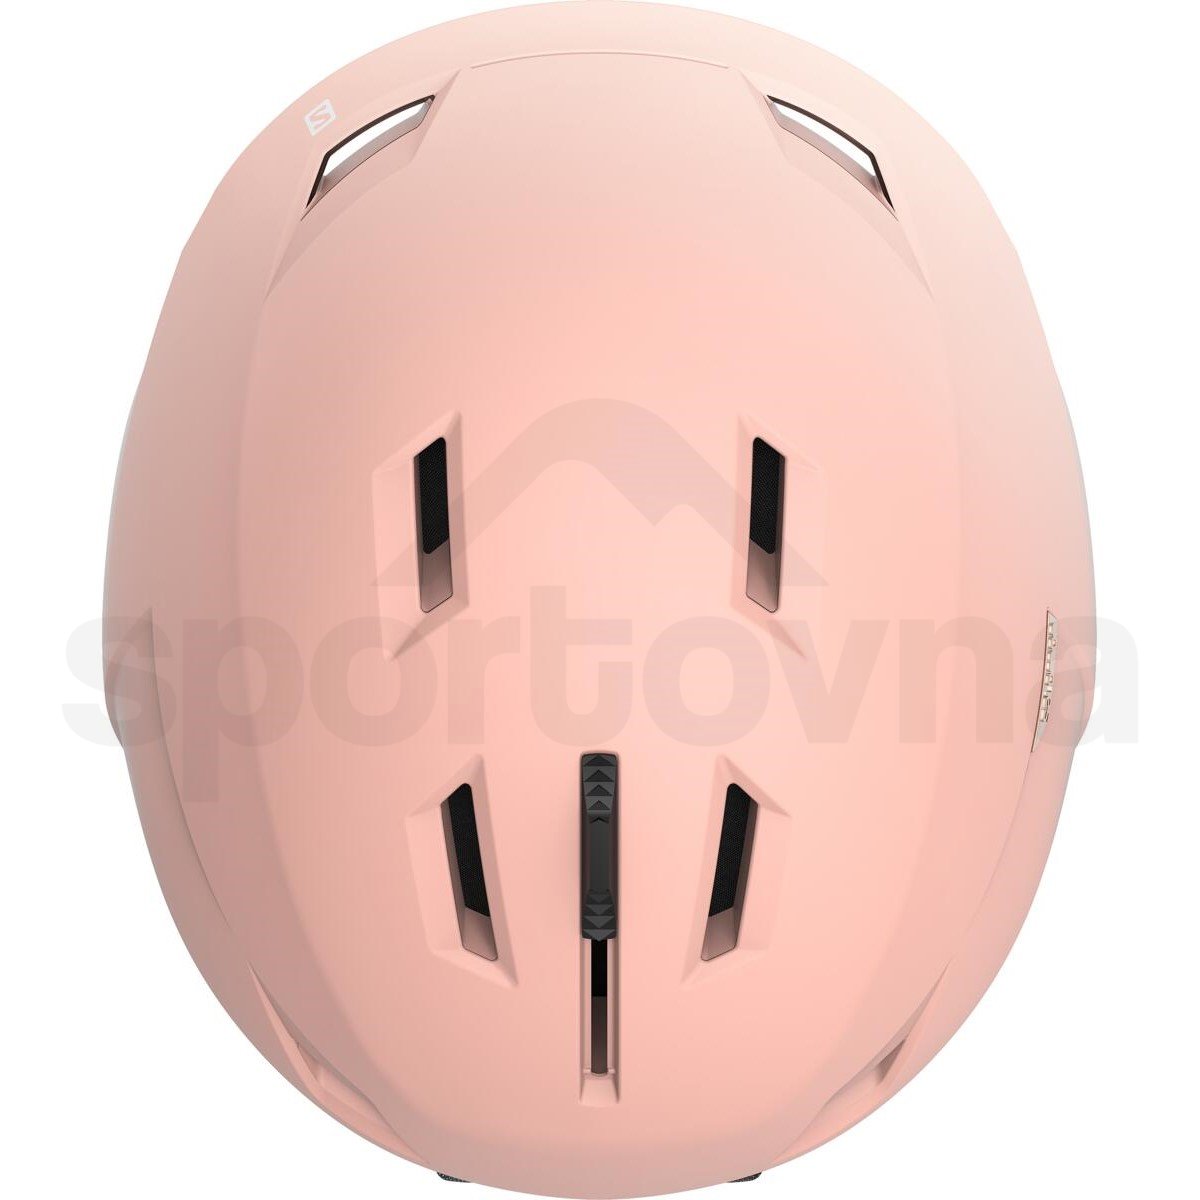 Lyžařská helma Salomon Icon LT W - růžová